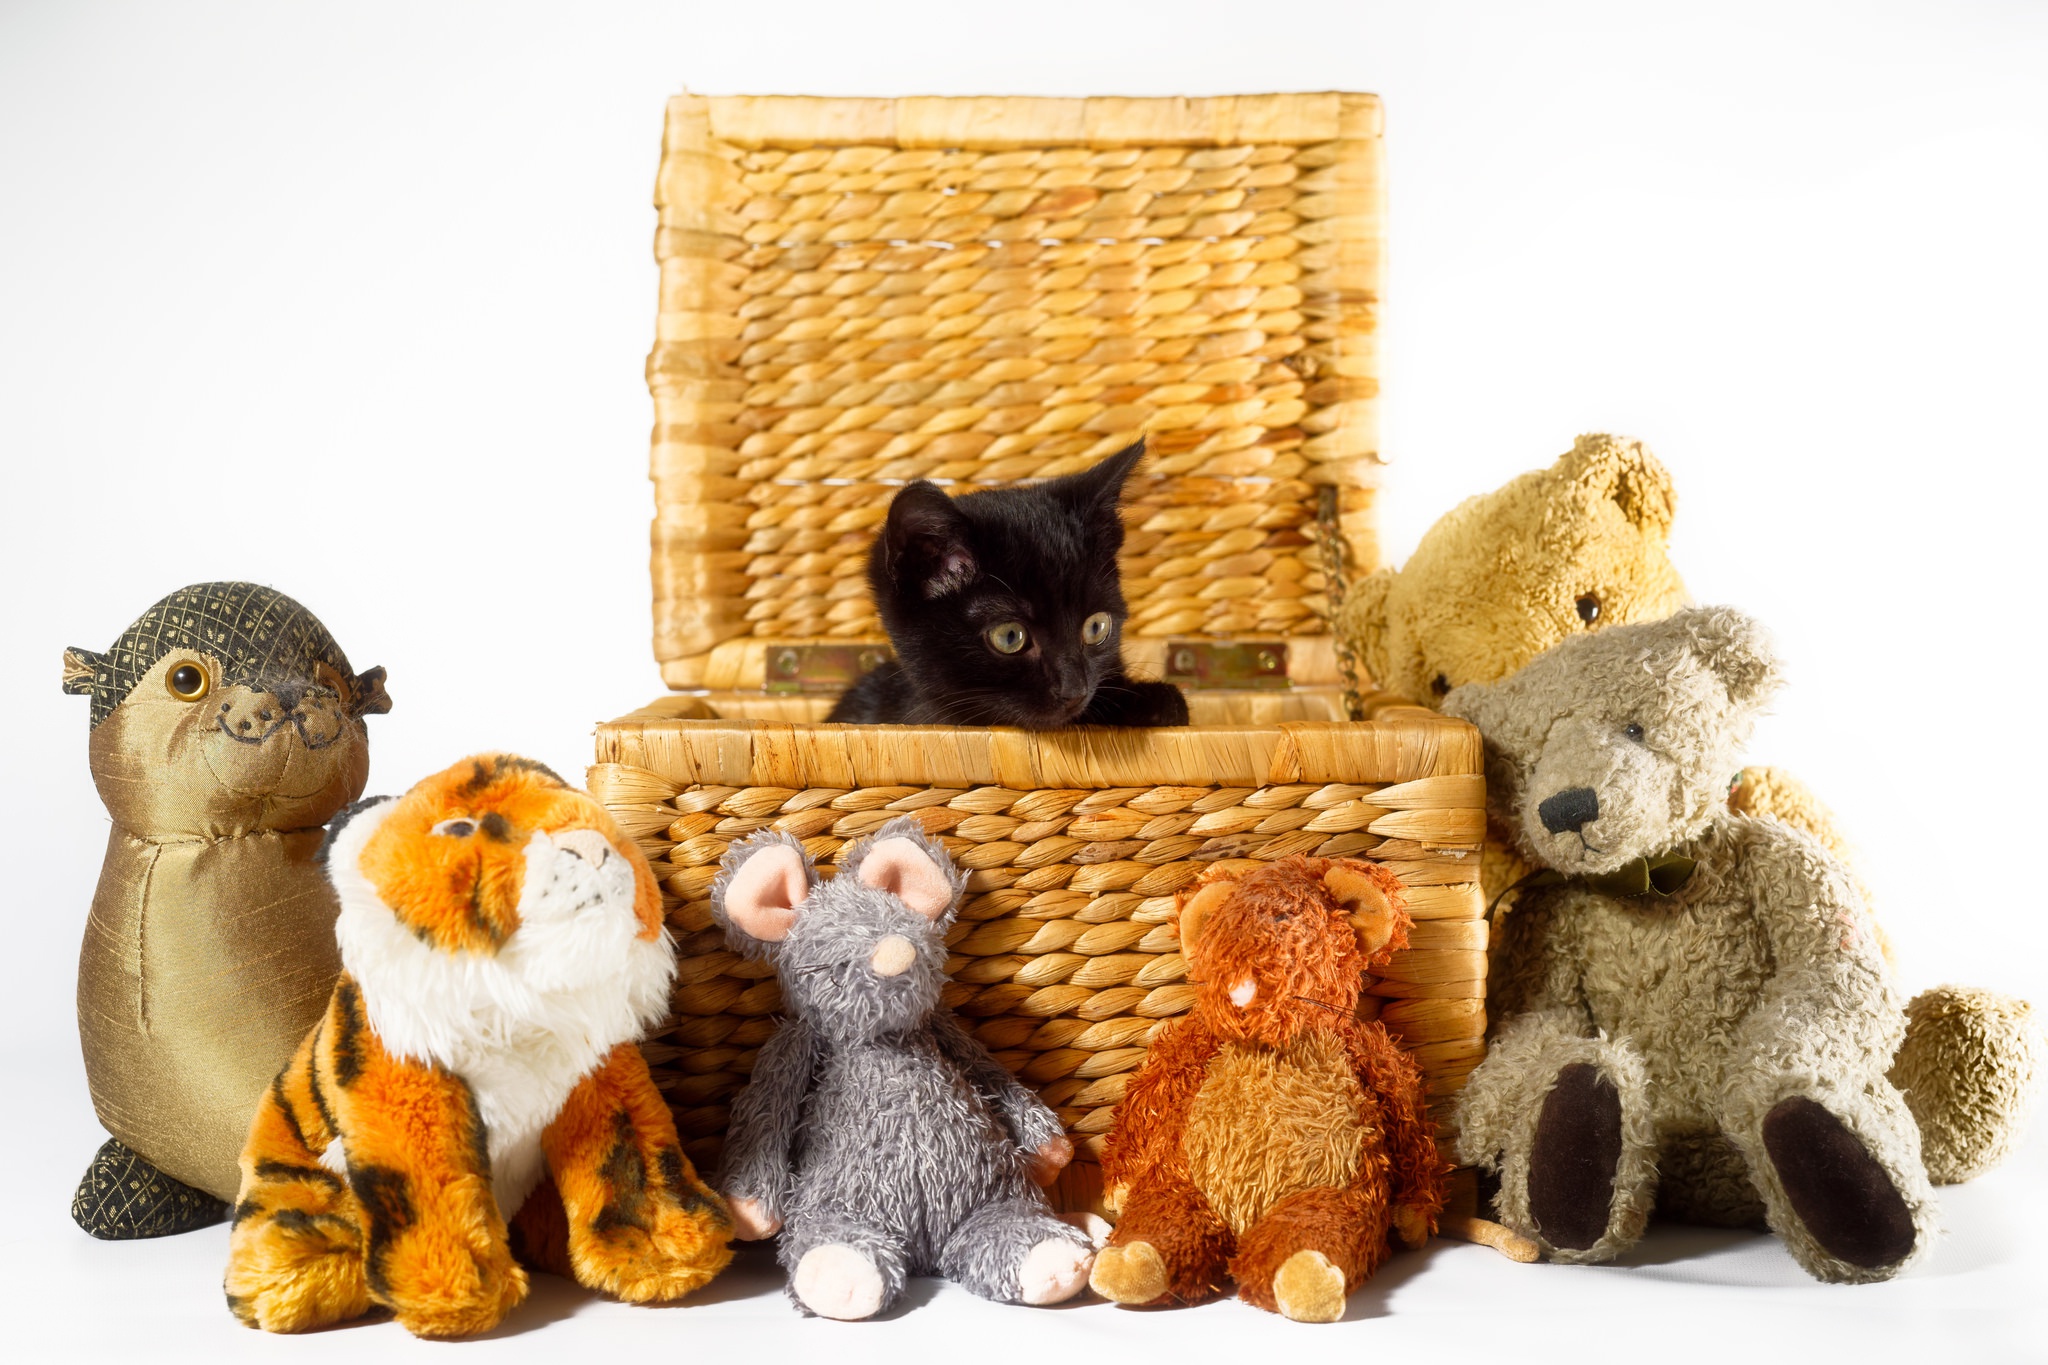 Free download wallpaper Cats, Cat, Kitten, Animal, Basket, Baby Animal, Stuffed Animal on your PC desktop